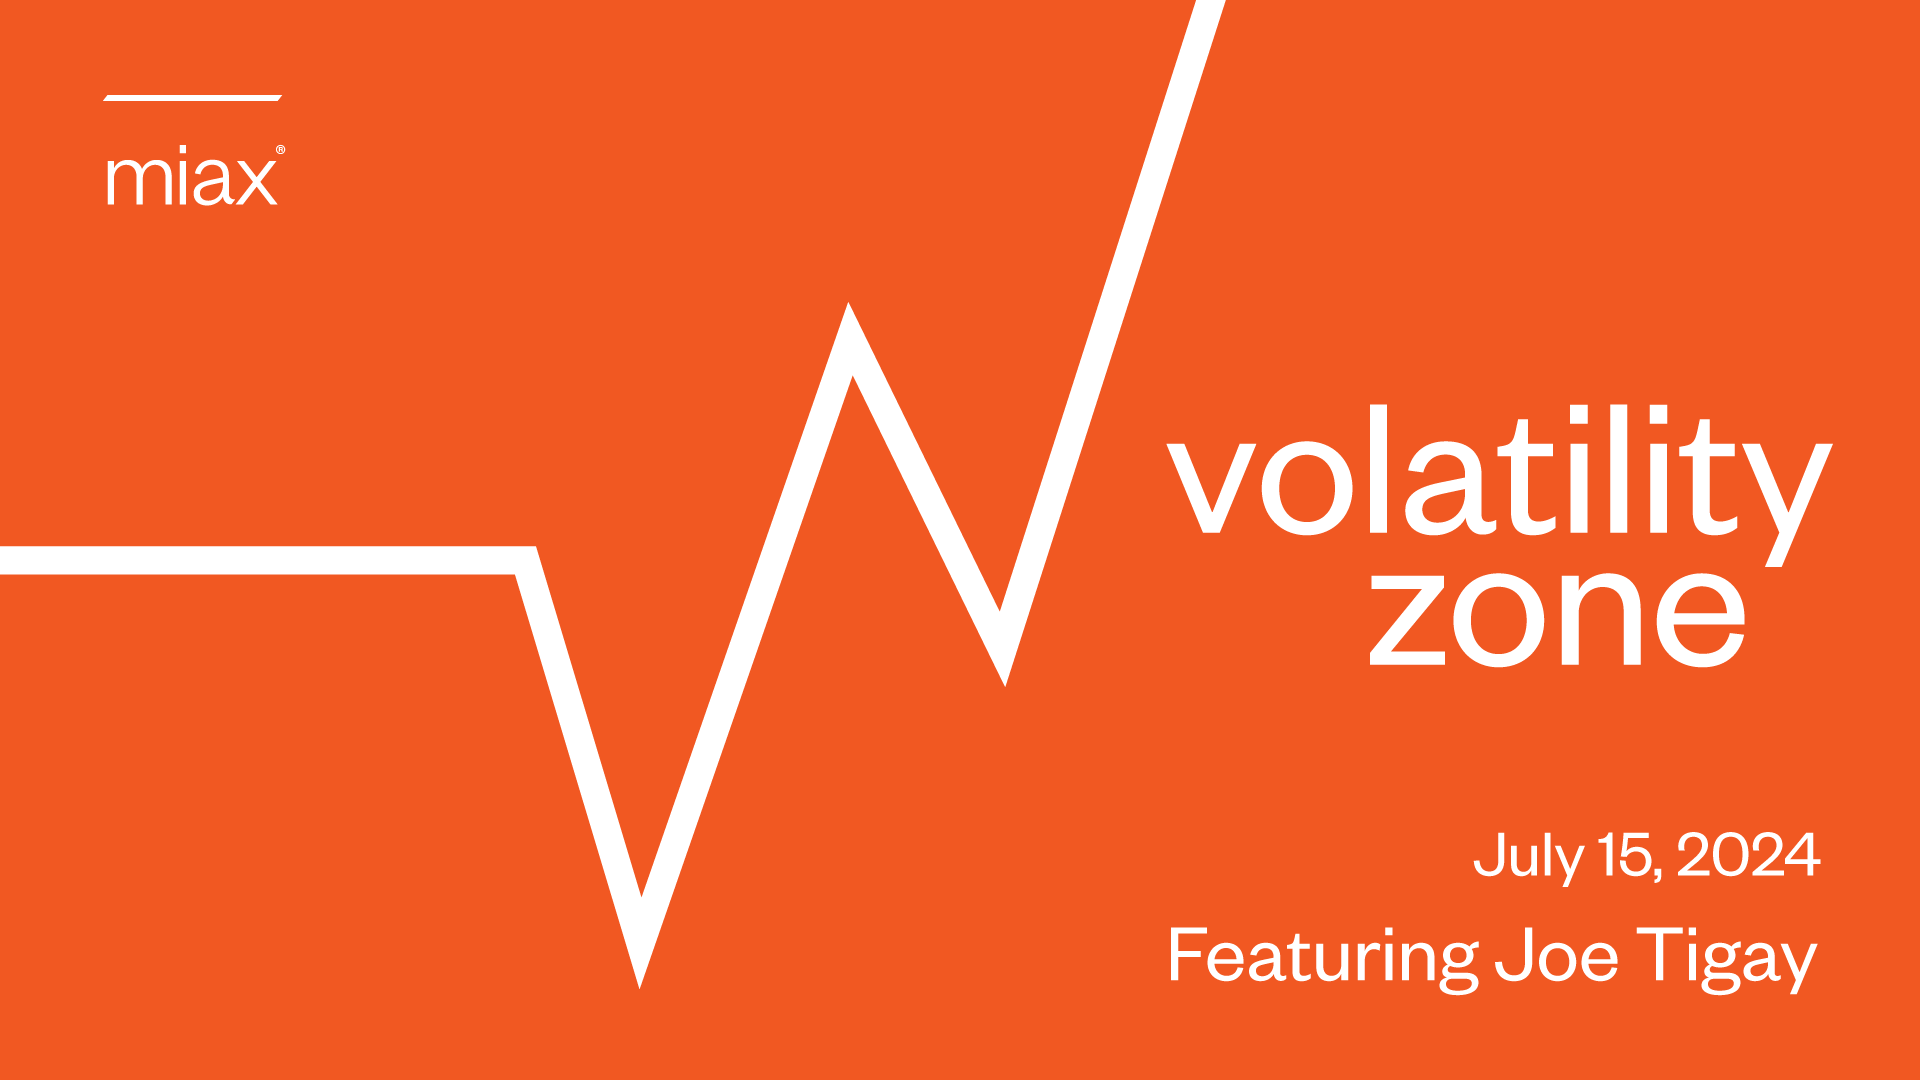 MIAX Volatility Zone July 15, 2024